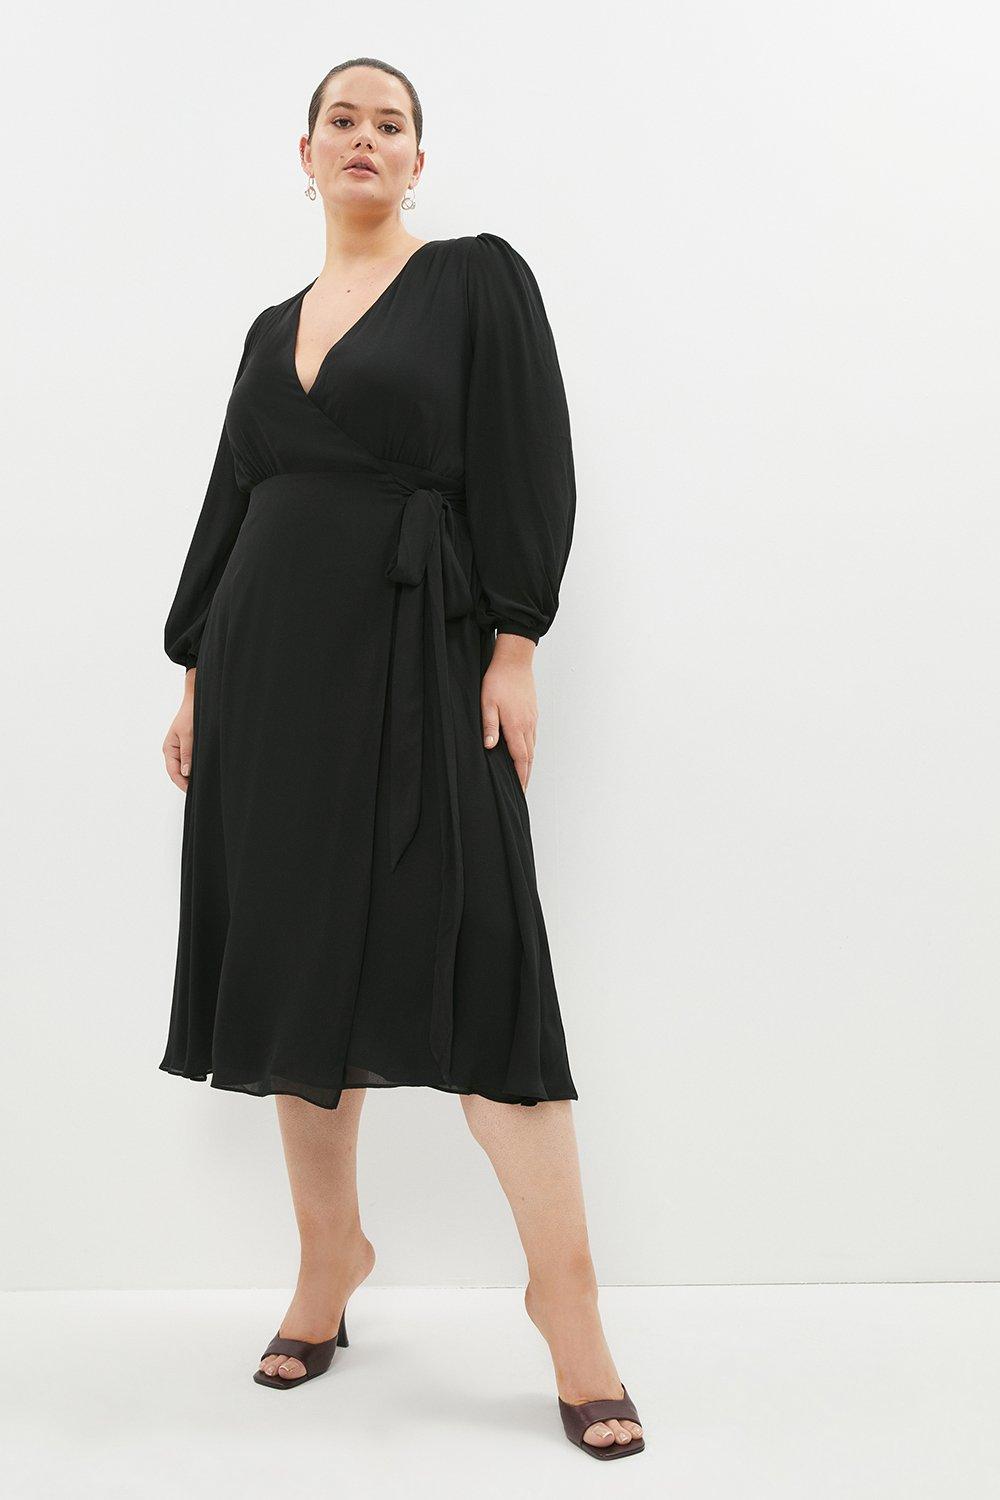 Plus Size Maxi Wrap Dress - Black